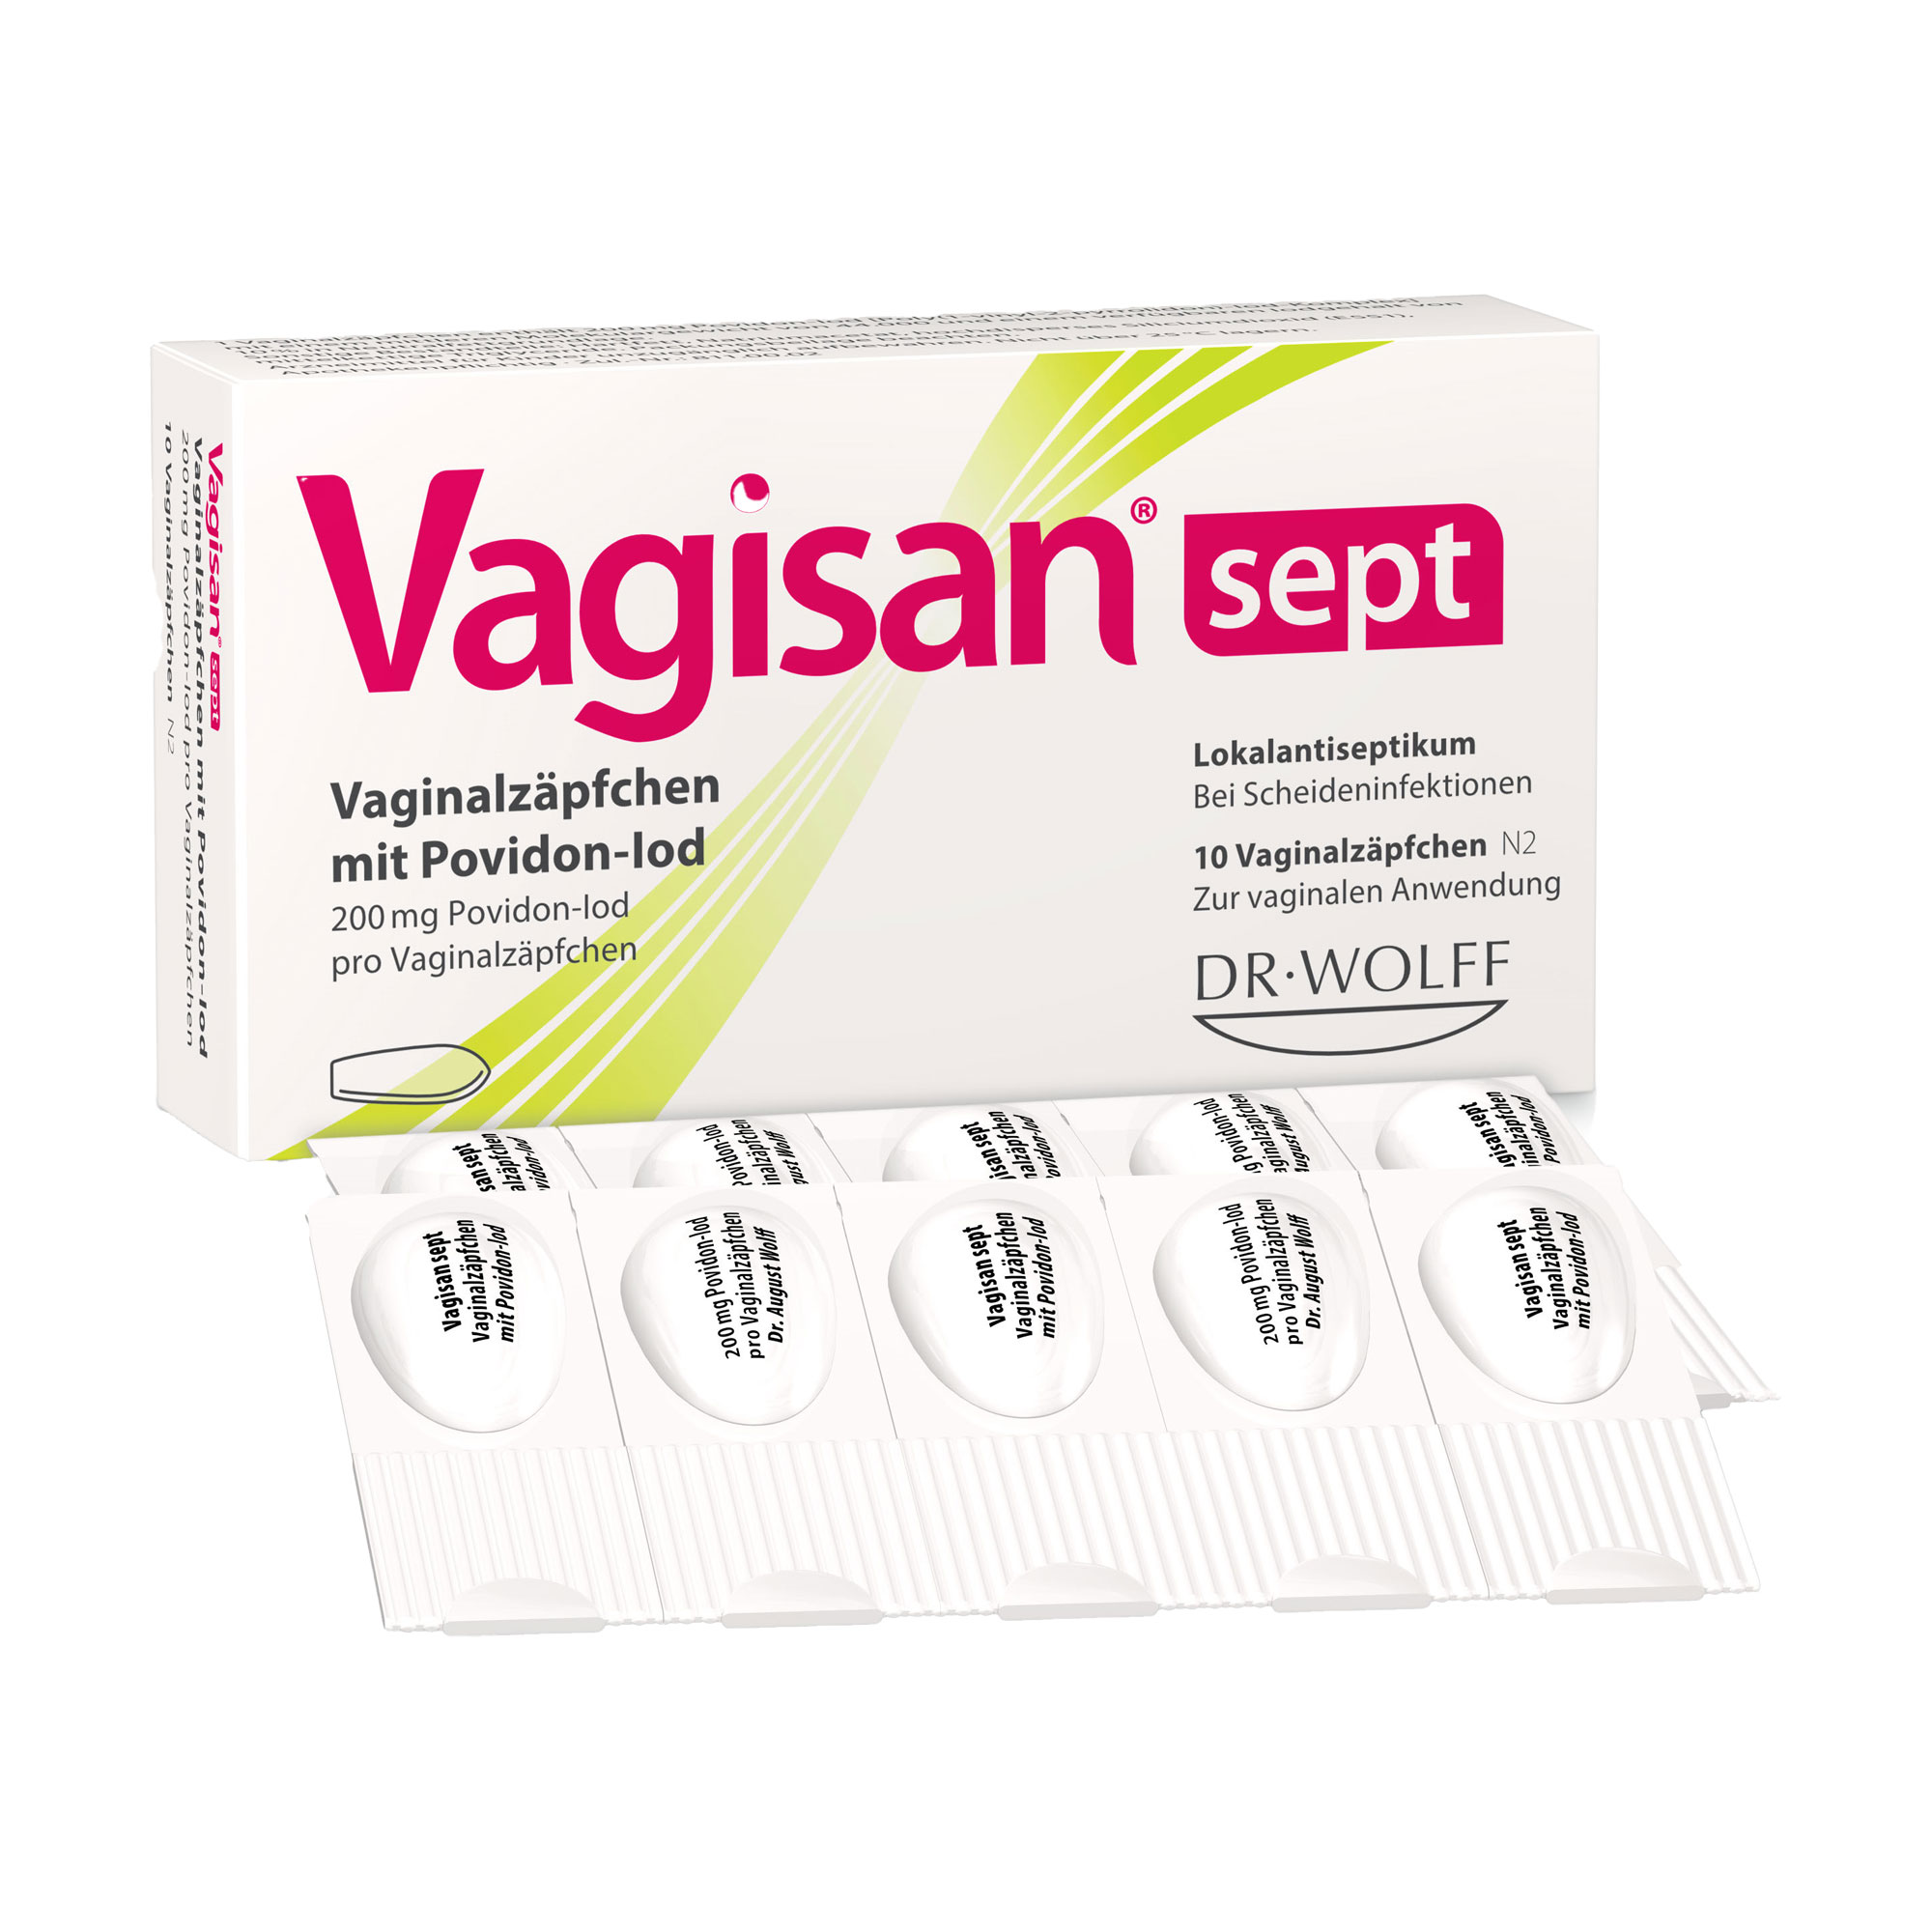 Desinfizierende Vaginalzäpfchen zur Anwendung bei spezifischen und unspezifischen Infektionen der Scheide und bei Scheideninfektionen.